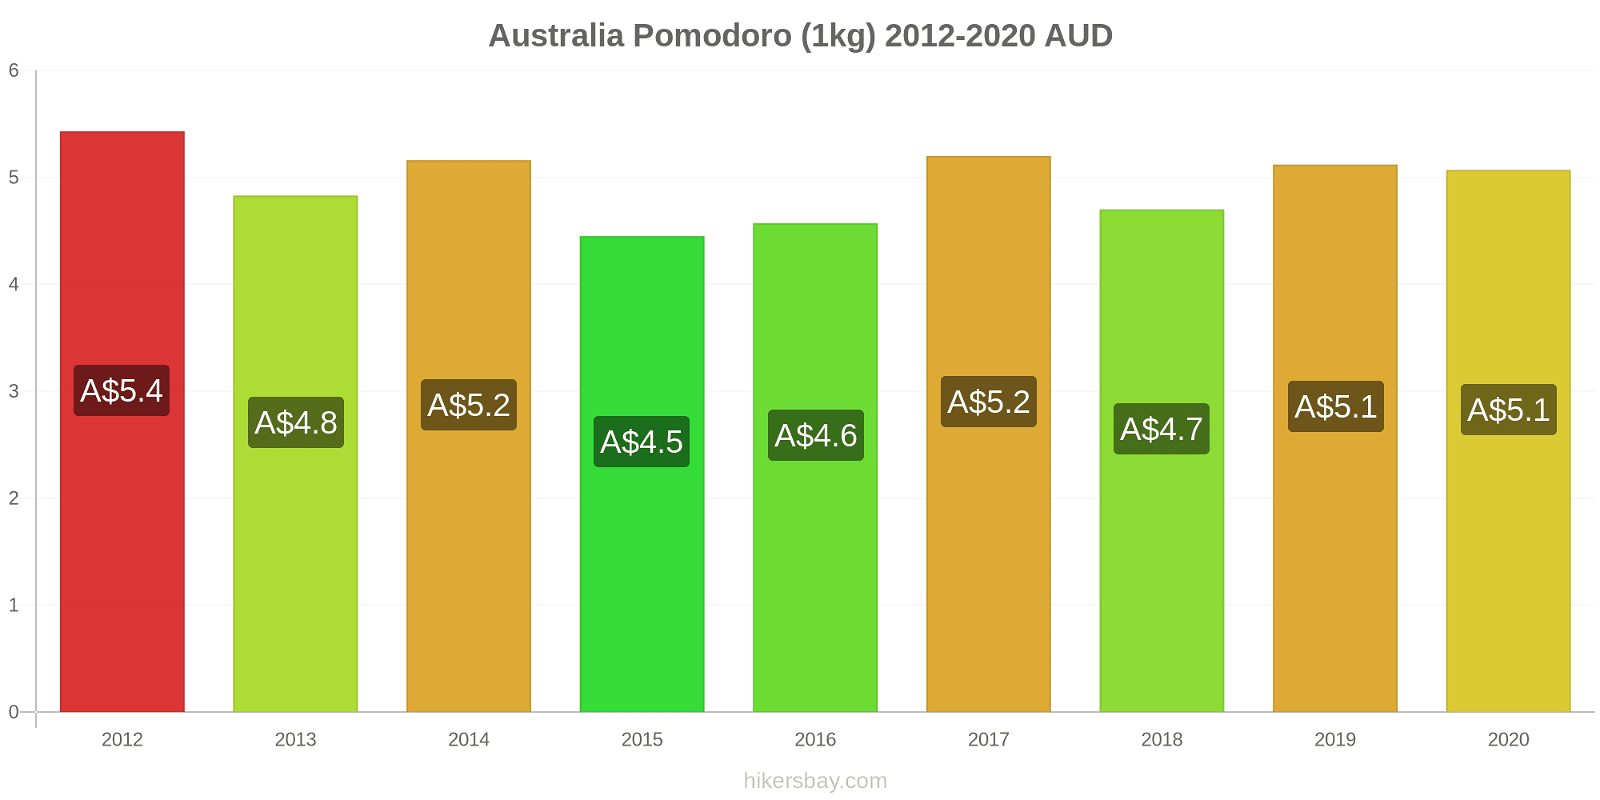 Australia variazioni di prezzo Pomodoro (1kg) hikersbay.com